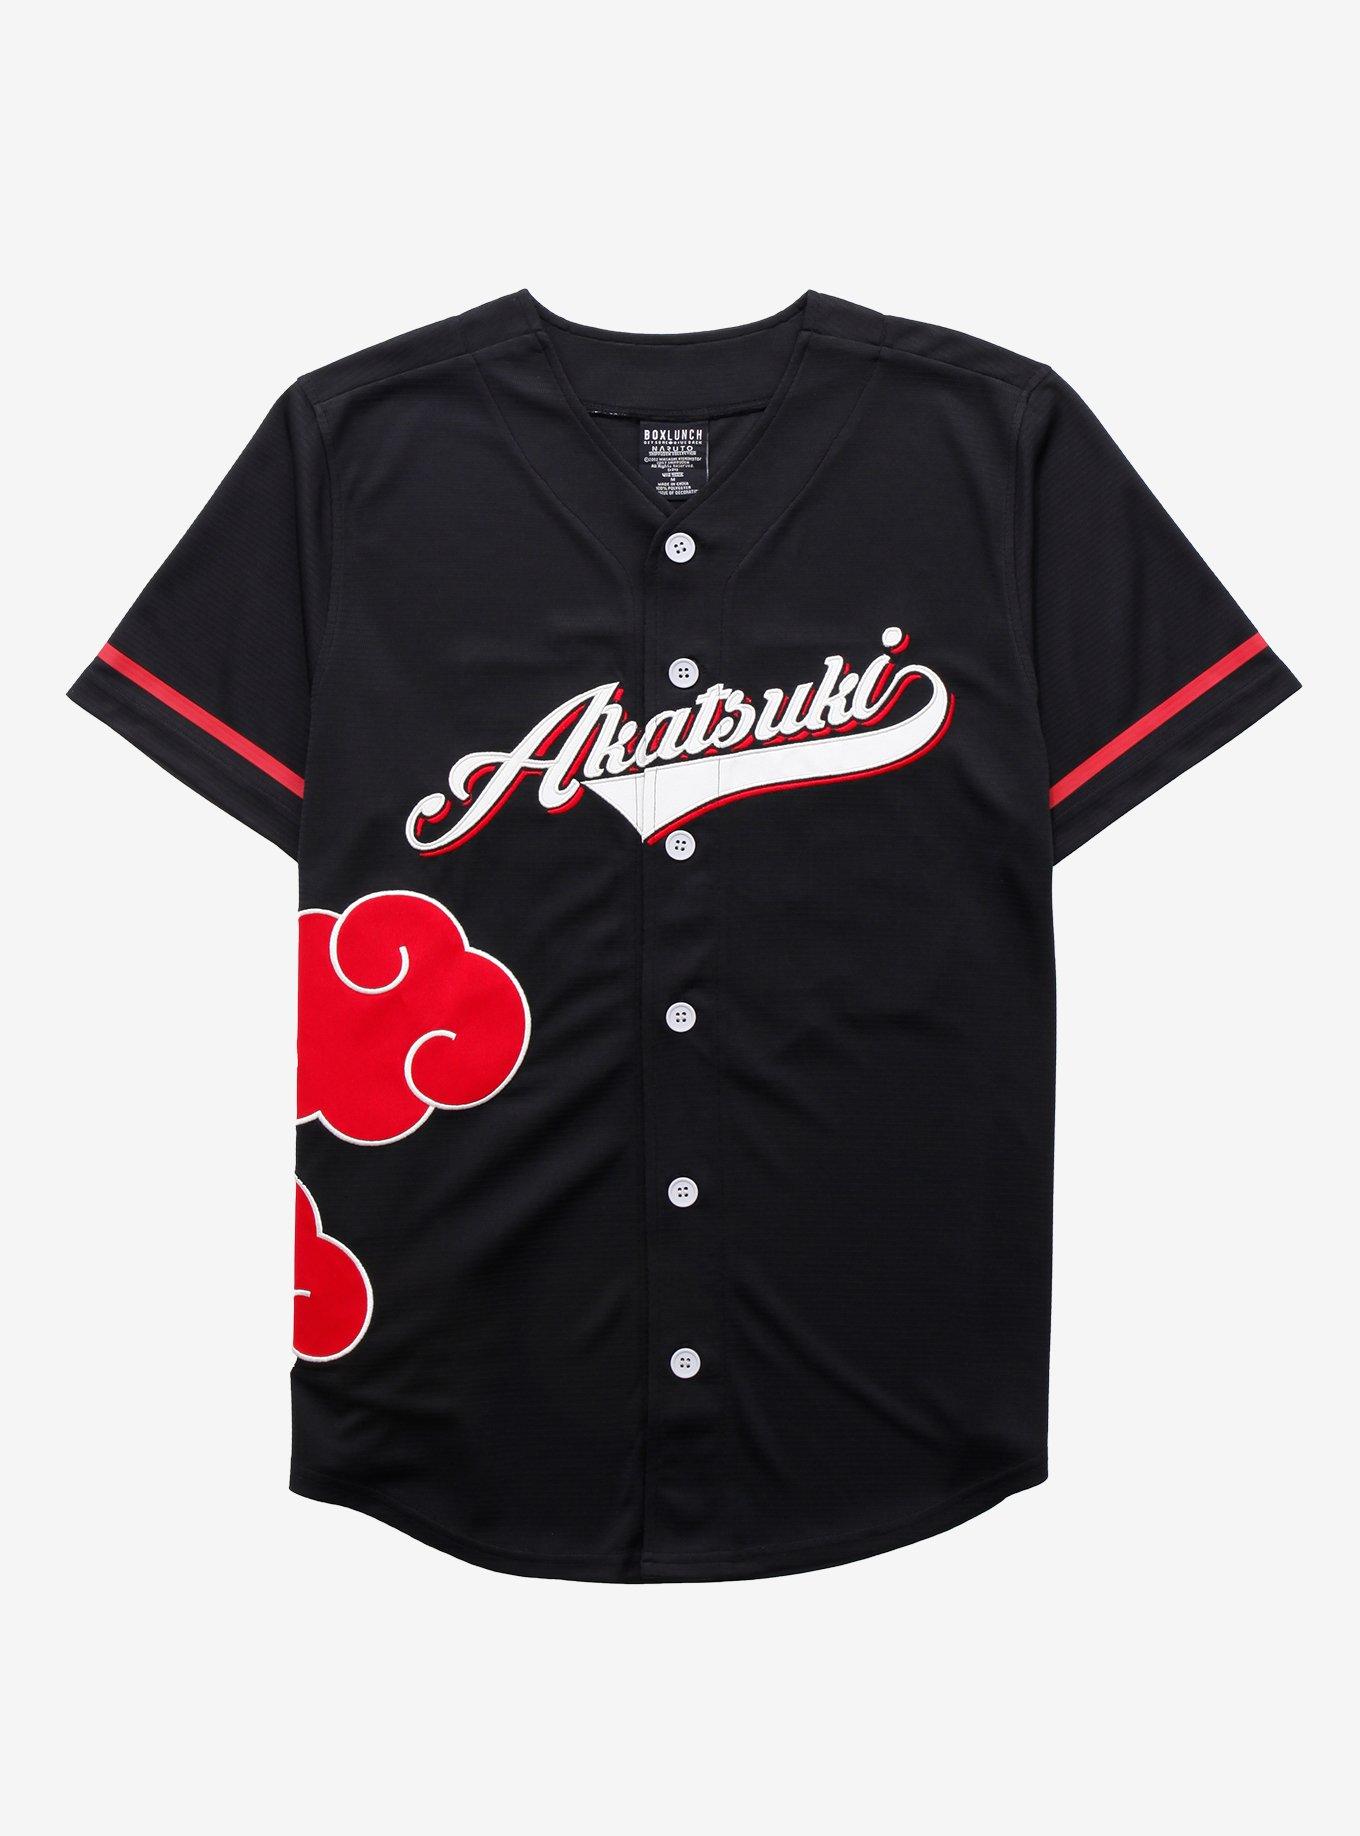 Custom Baseball Jersey Printed Personalized Baseball Shirts Button Down  Baseball Jersey Men Women Boy